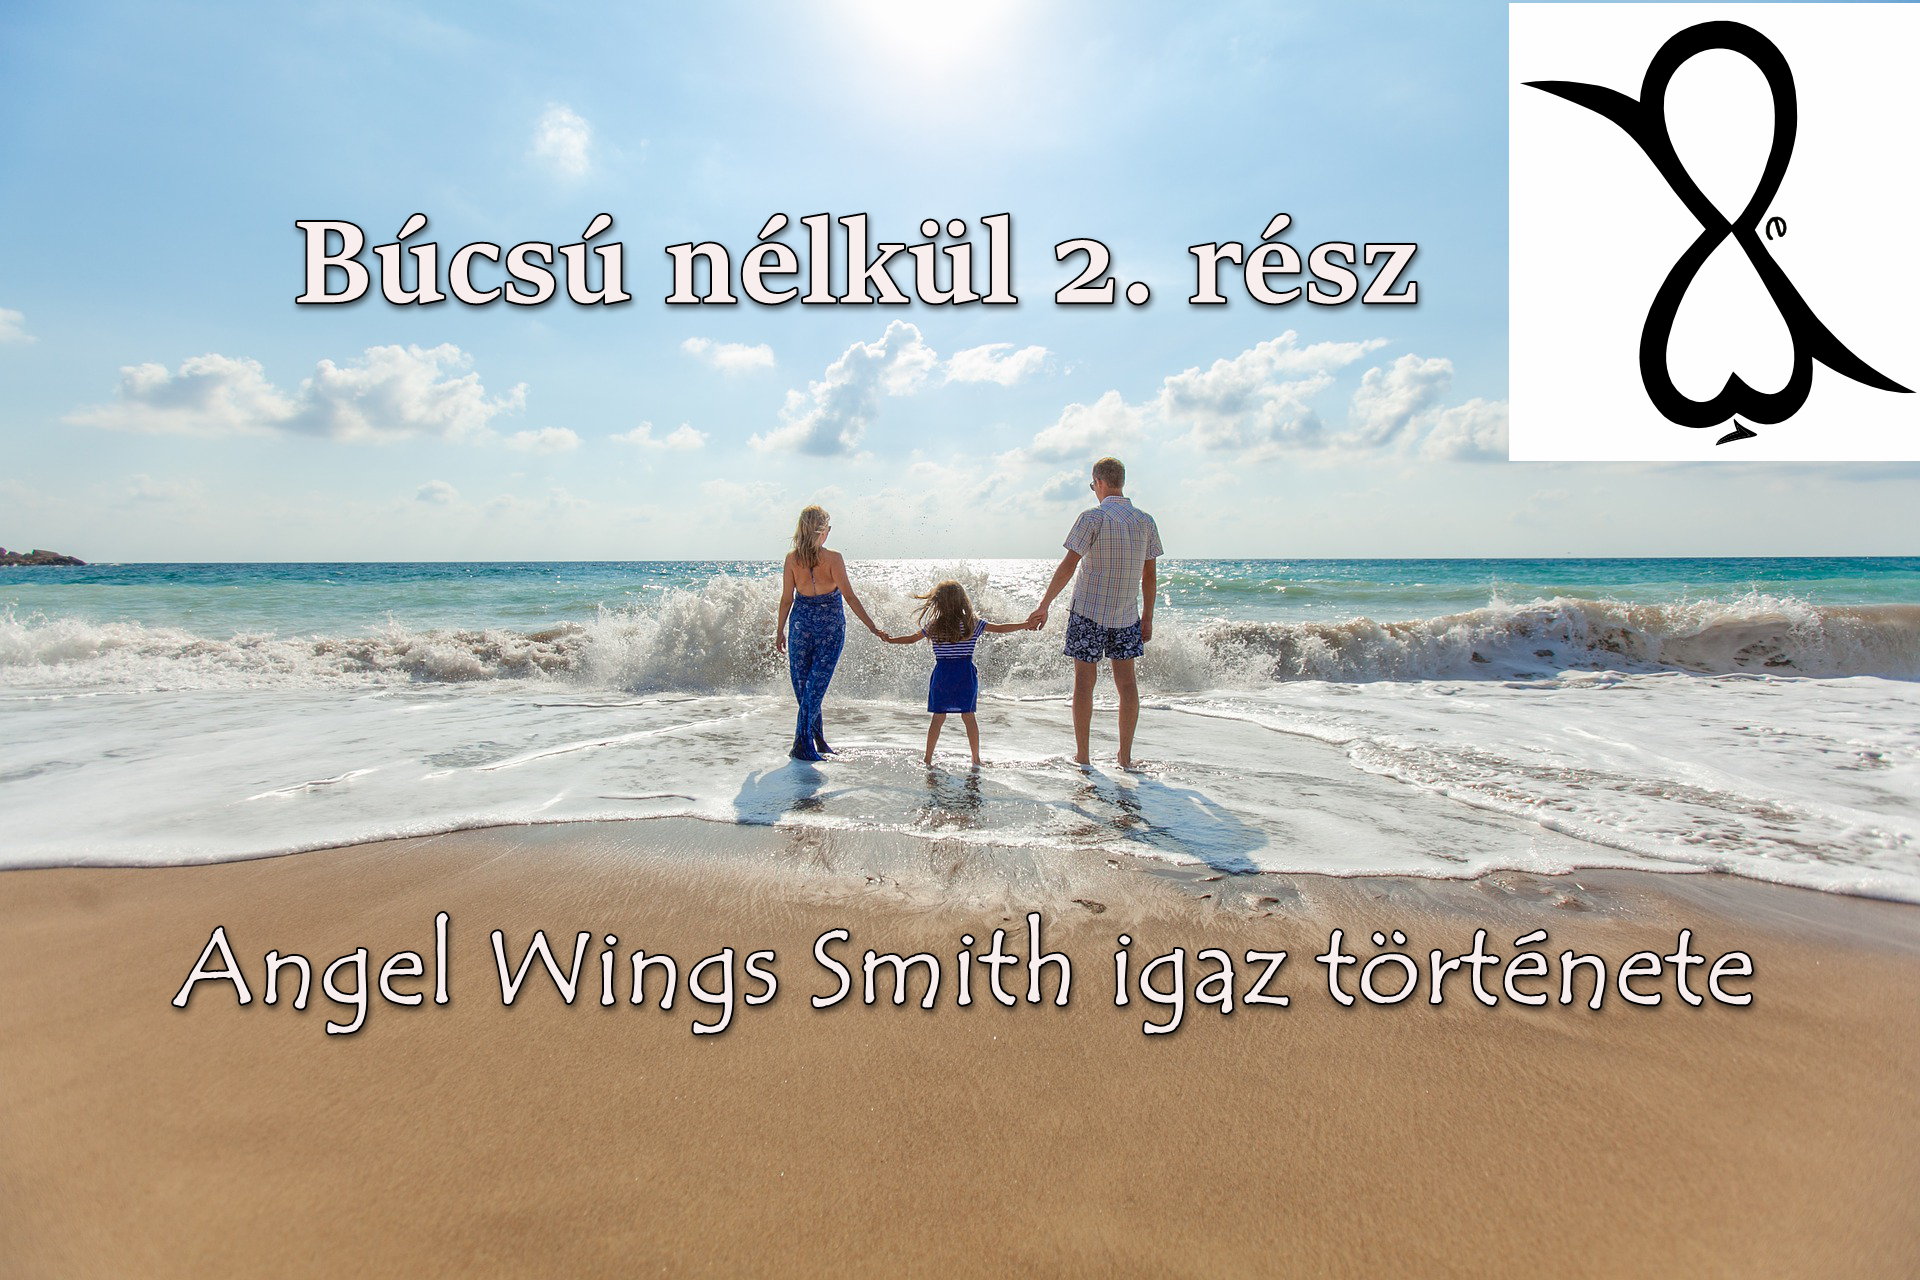 You are currently viewing Búcsú nélkül 2. rész (Angel Wings Smith igaz története)